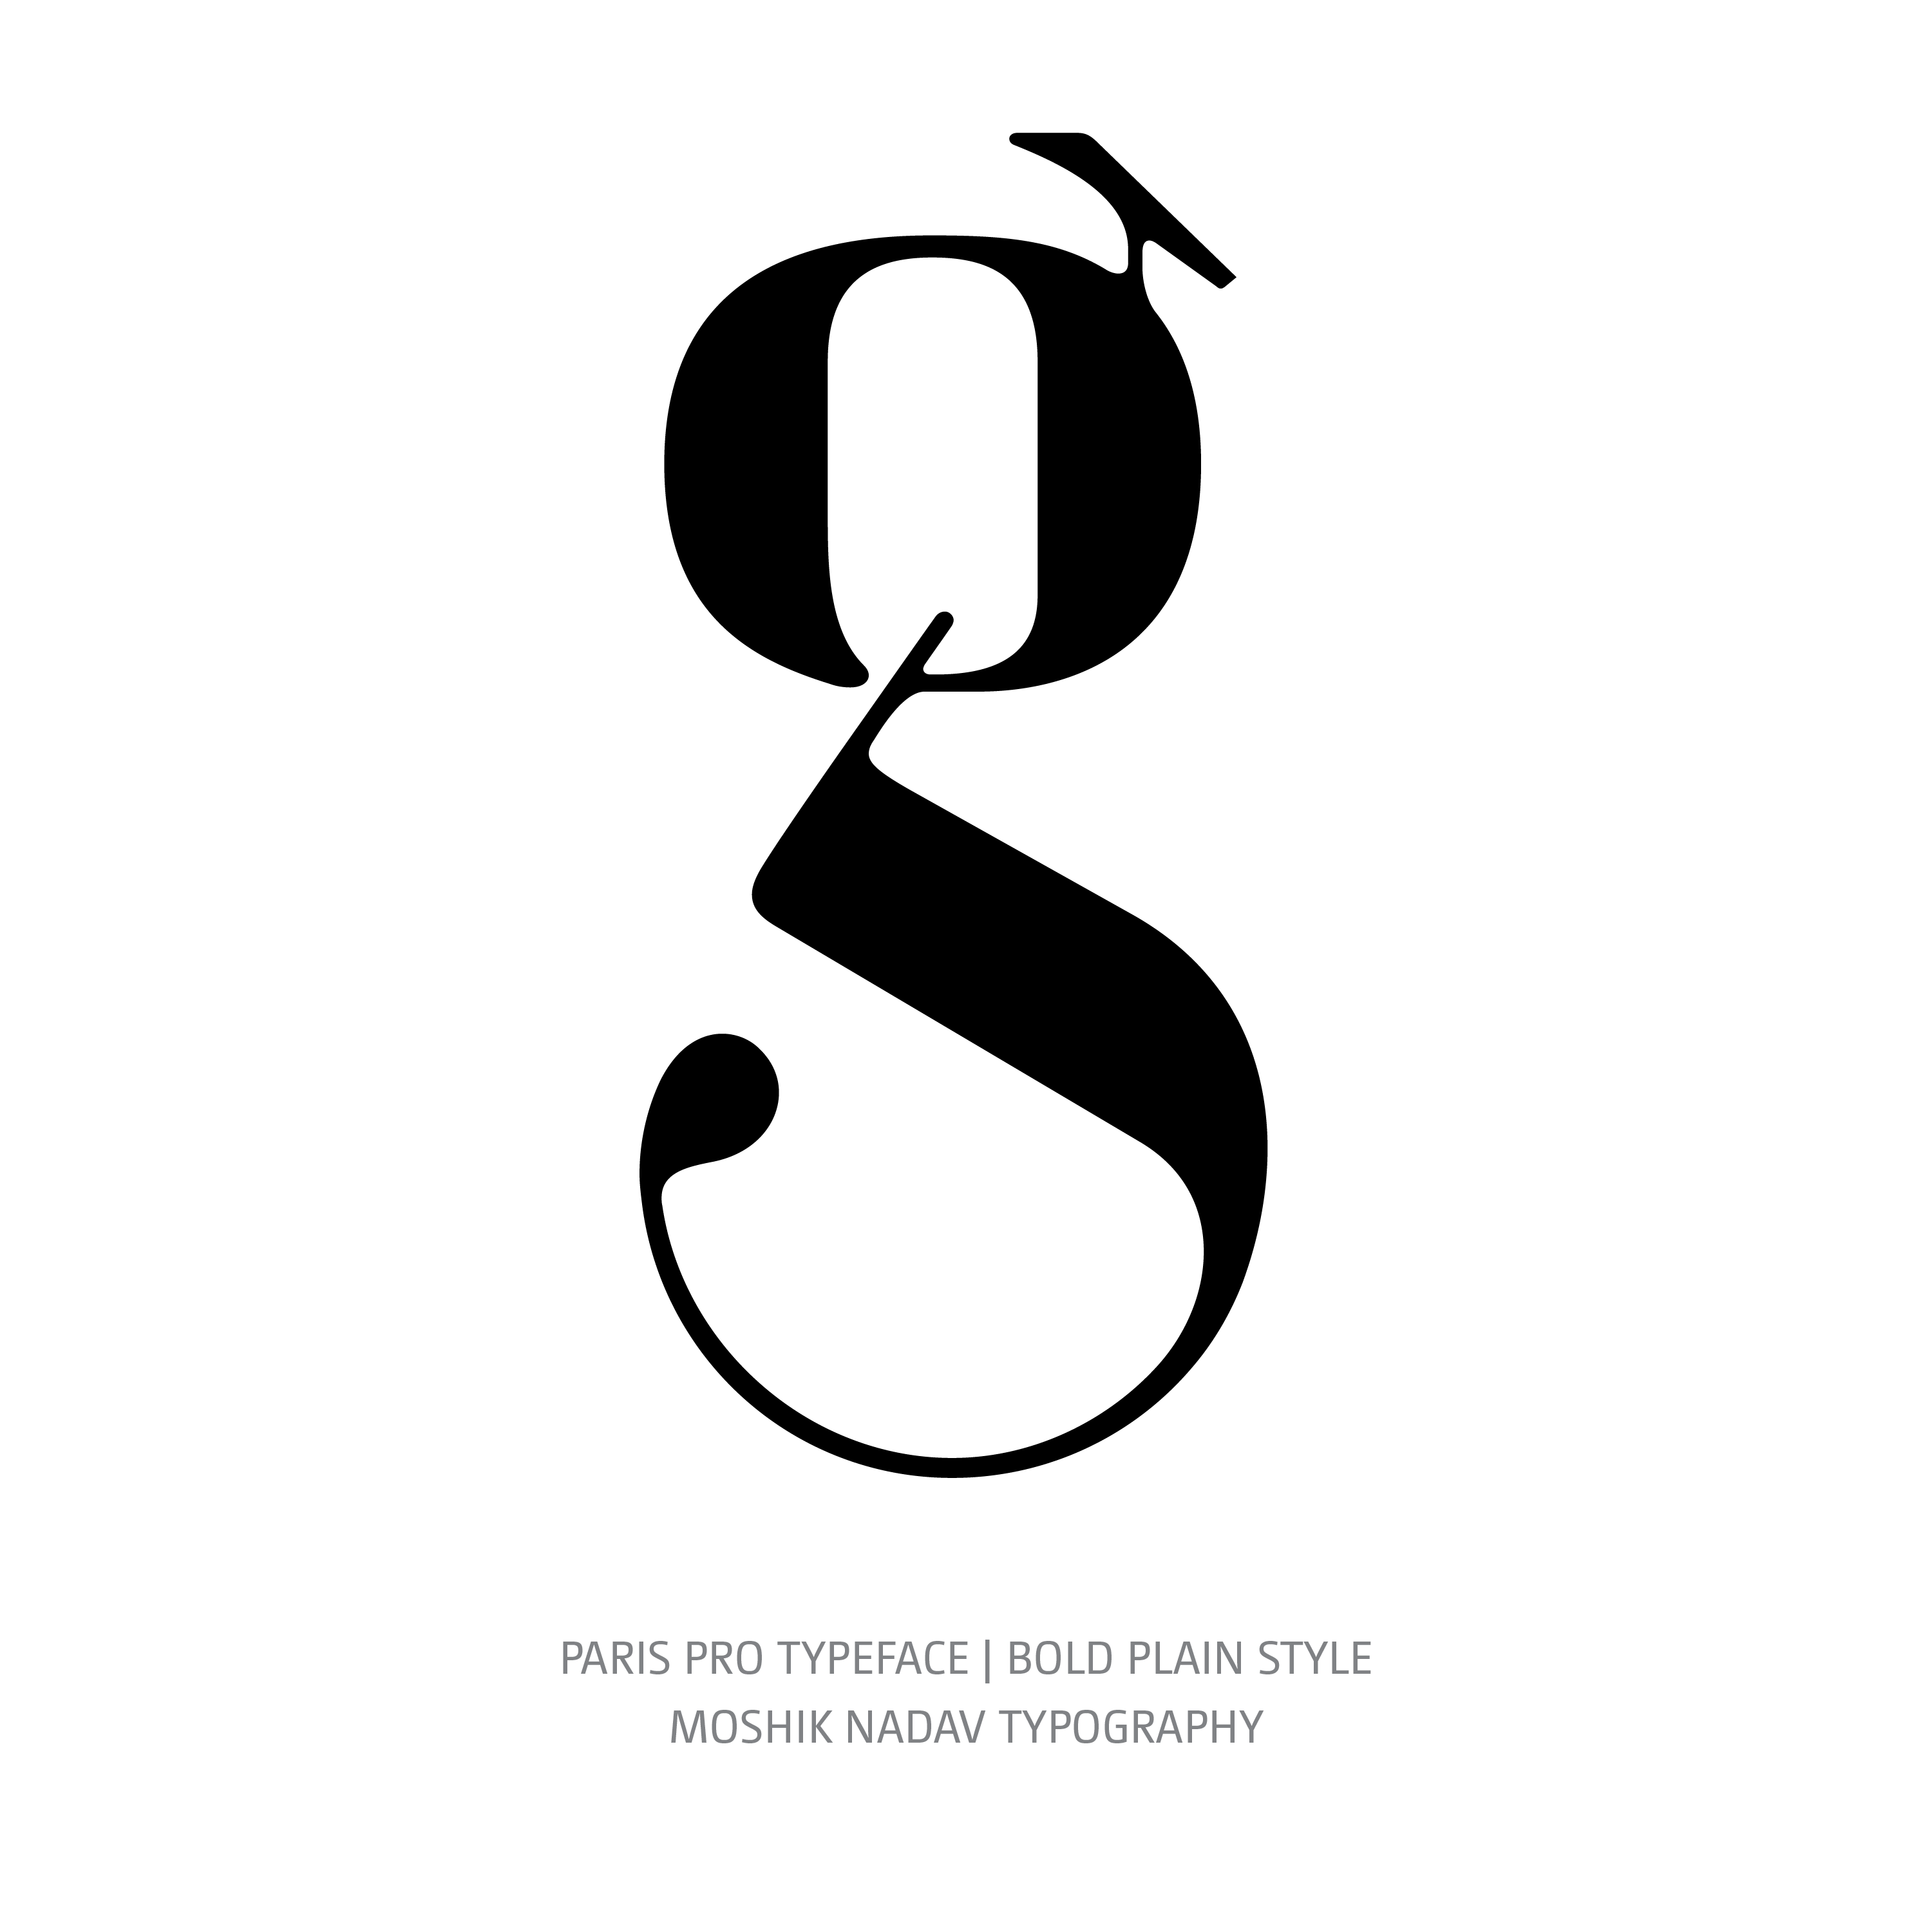 Paris Pro Typeface Regular Bold g